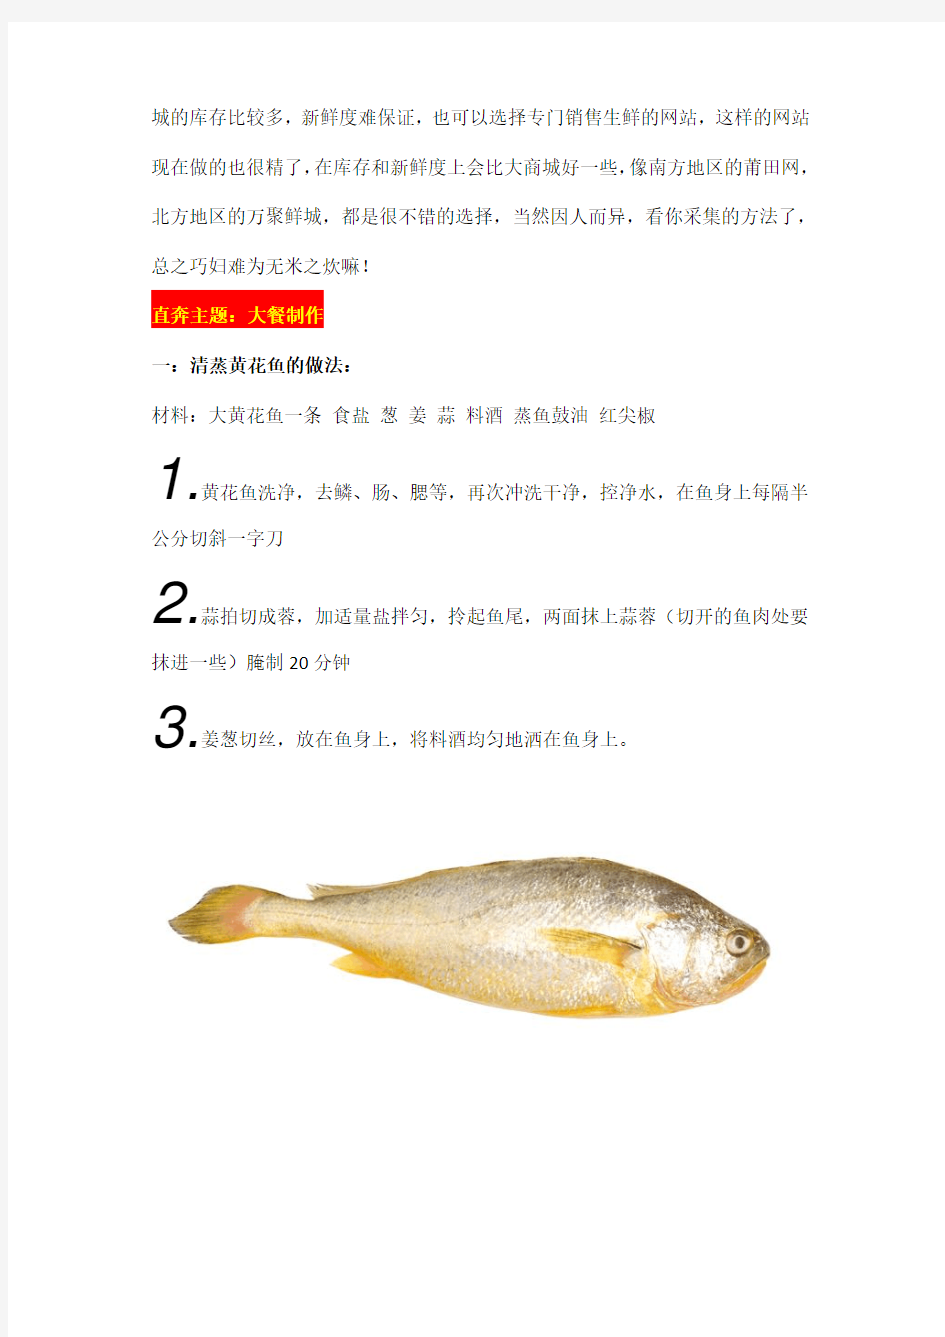 海鲜美食大汇总-图文详解教你做十大海鲜经典菜